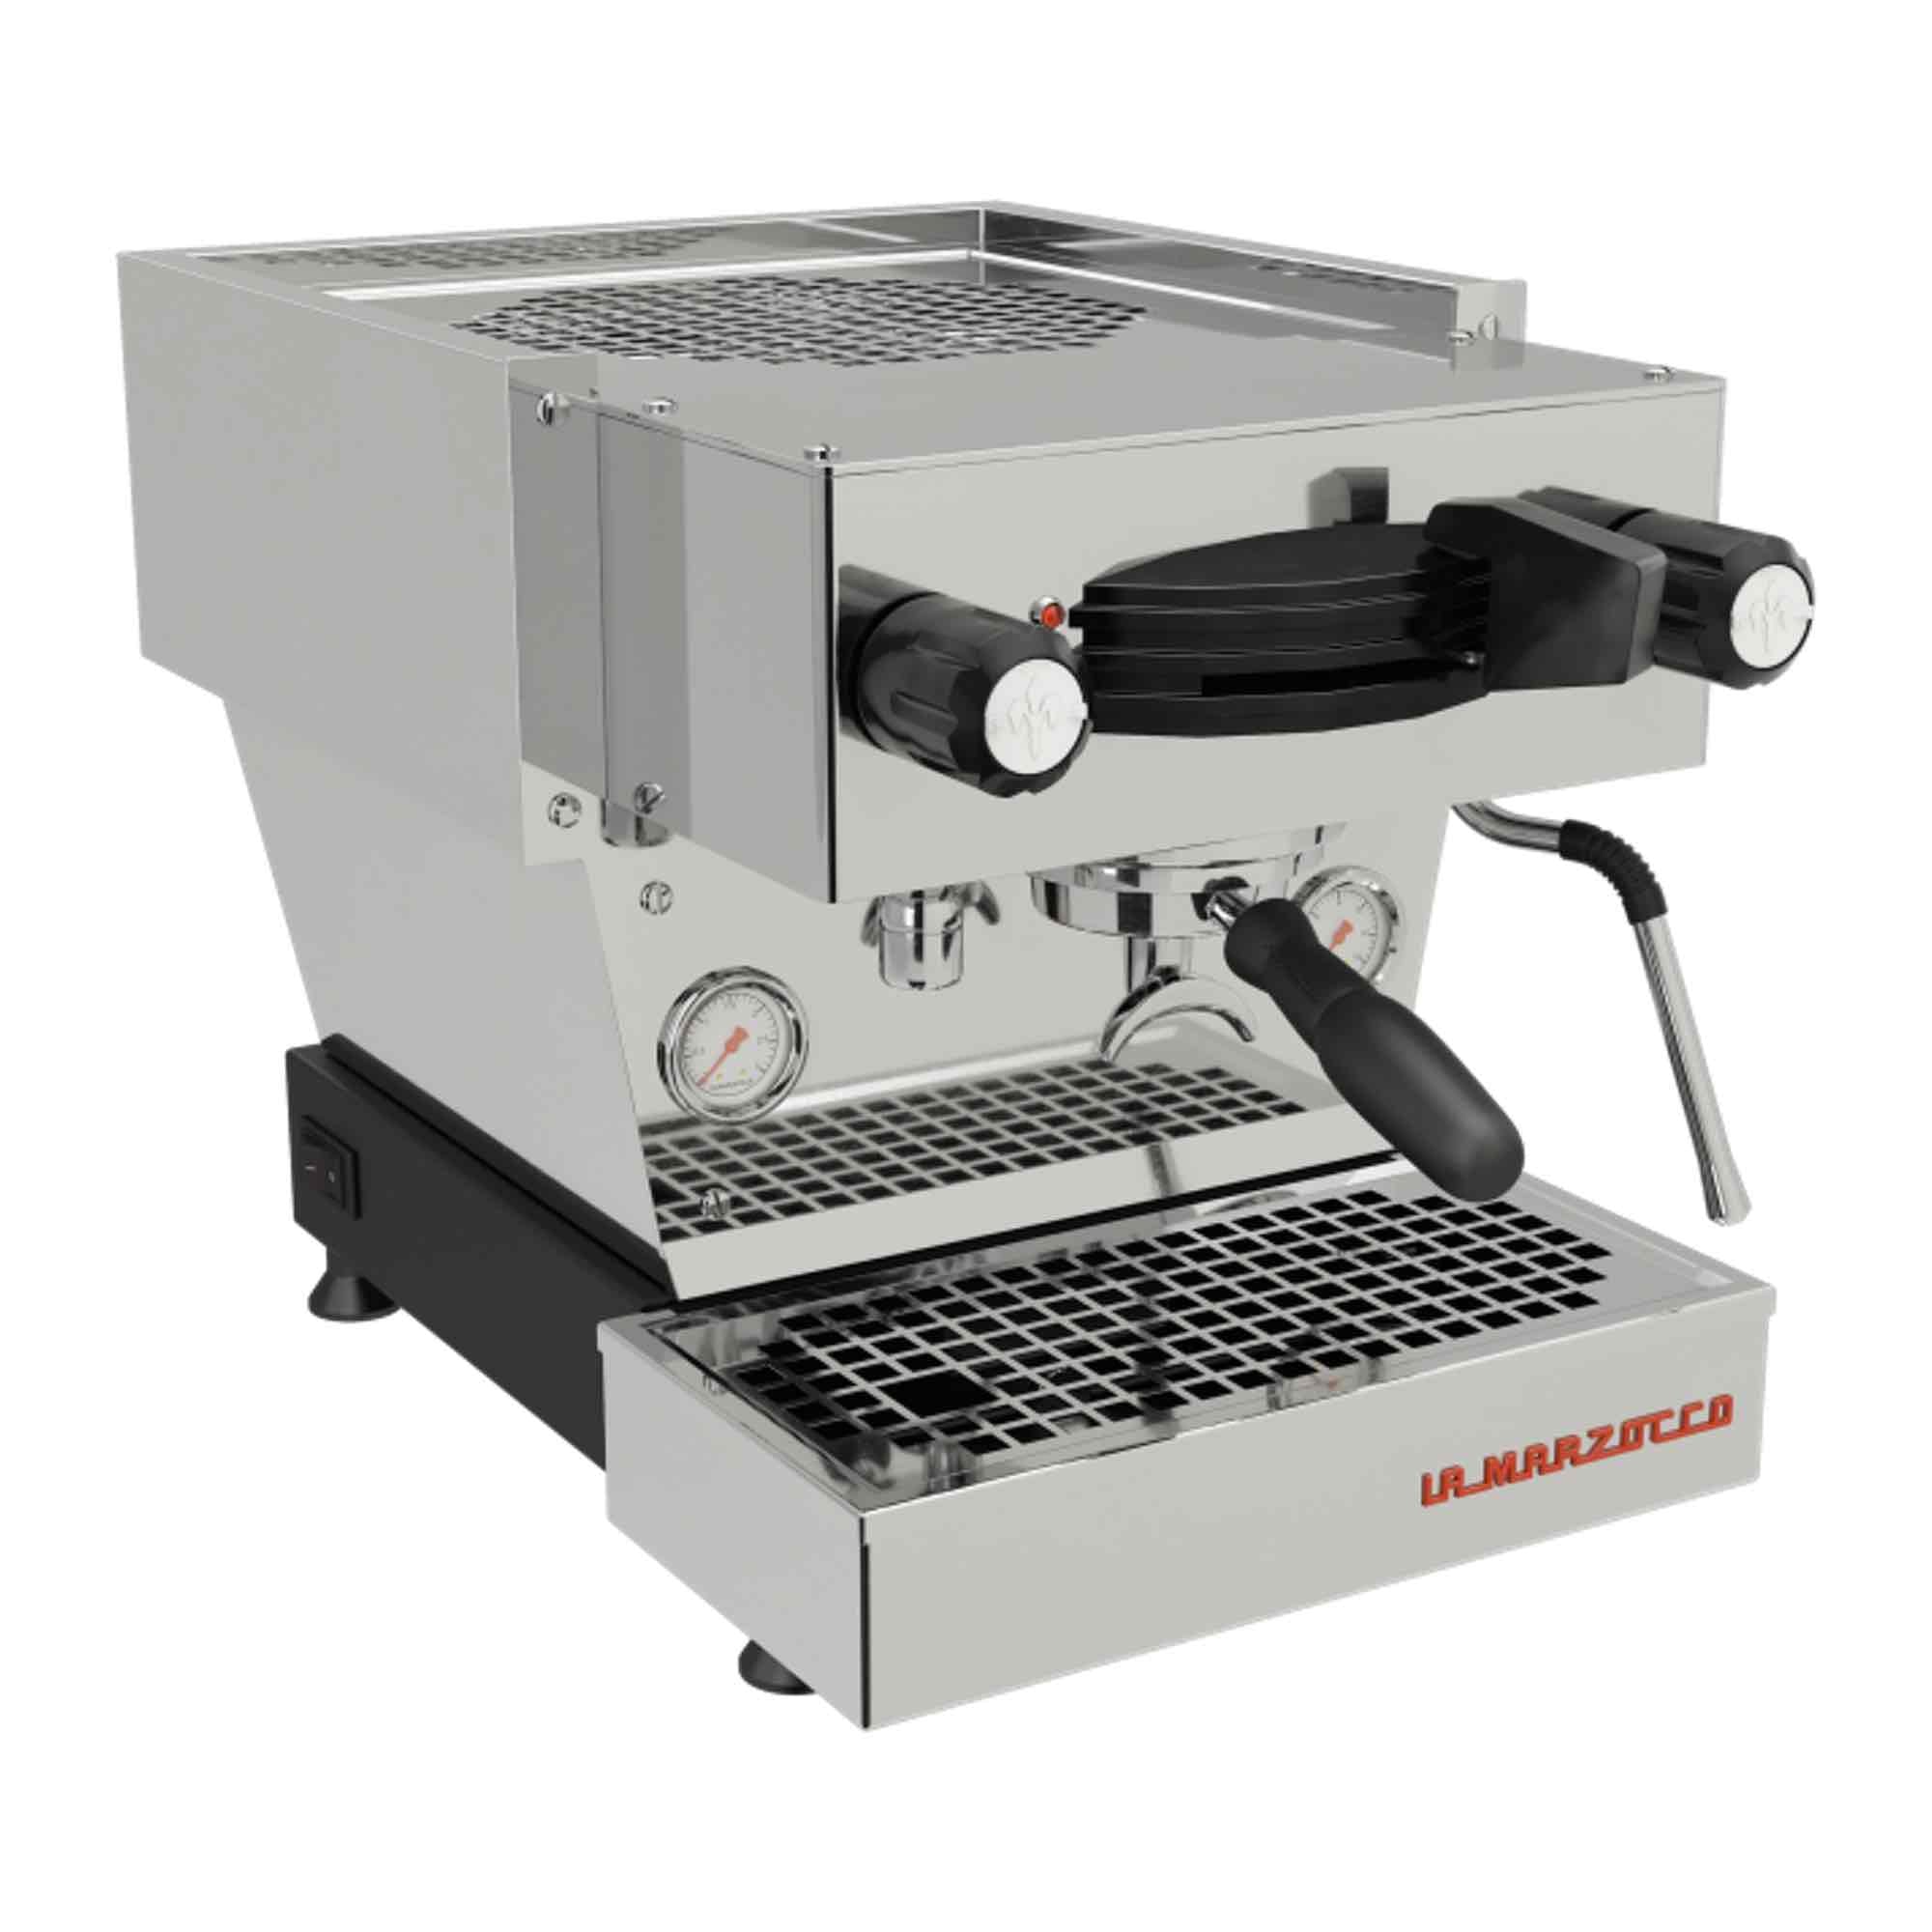 La Marzocco Domestic Coffee Machines